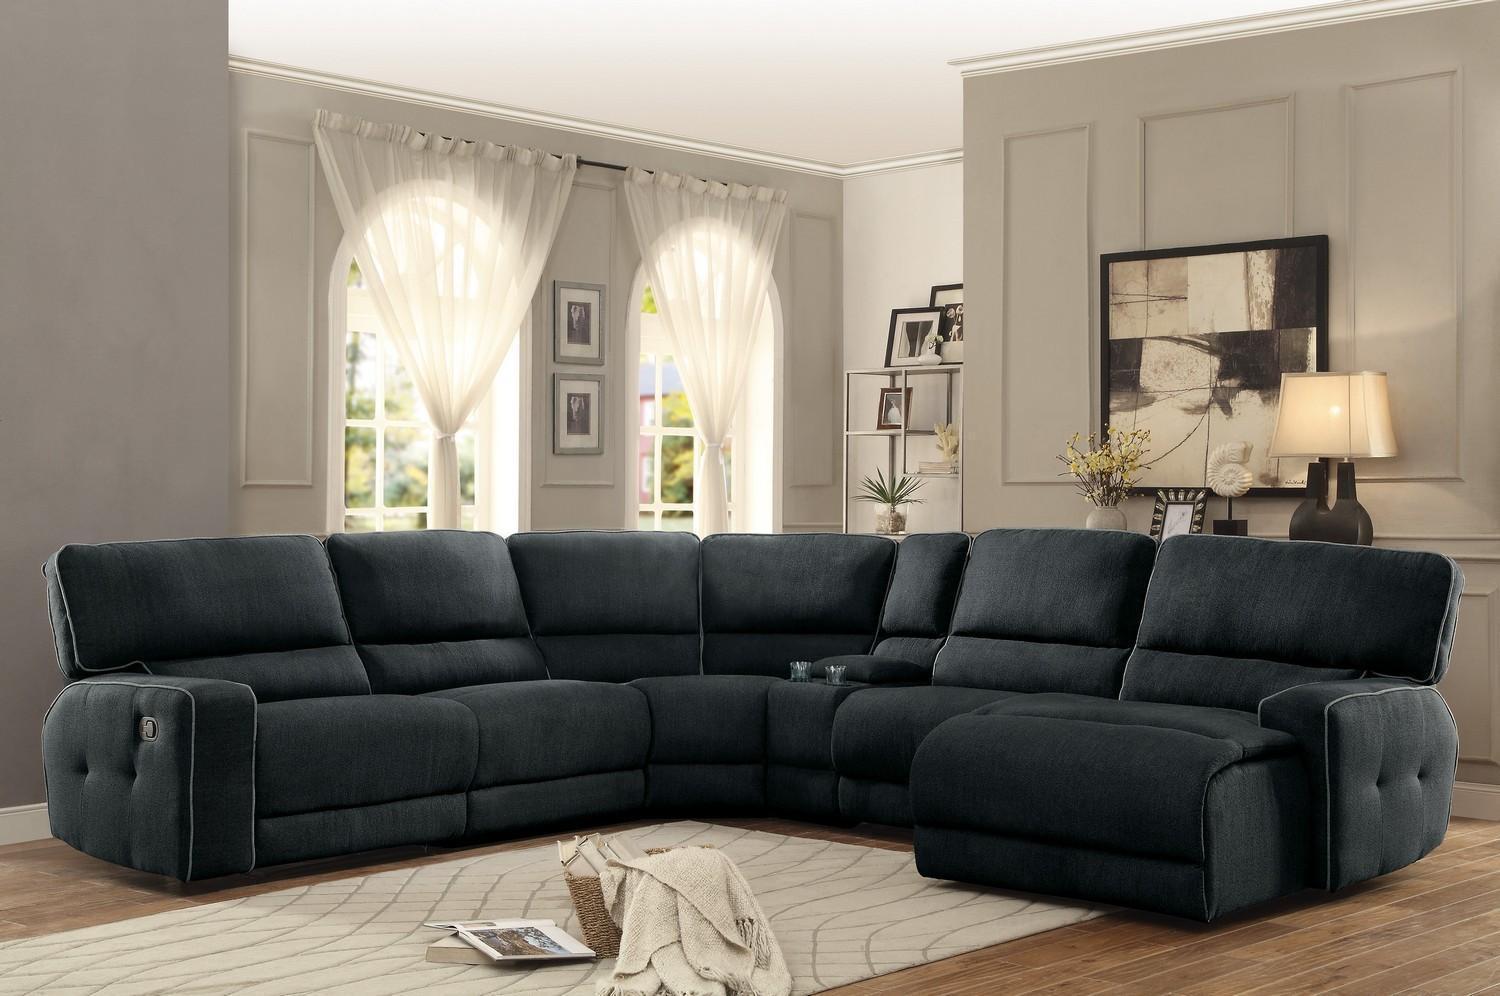 

    
Homelegance 8336 Keamey Dark Grey Fabric Reclining Sectional Sofa Chaise RHC
